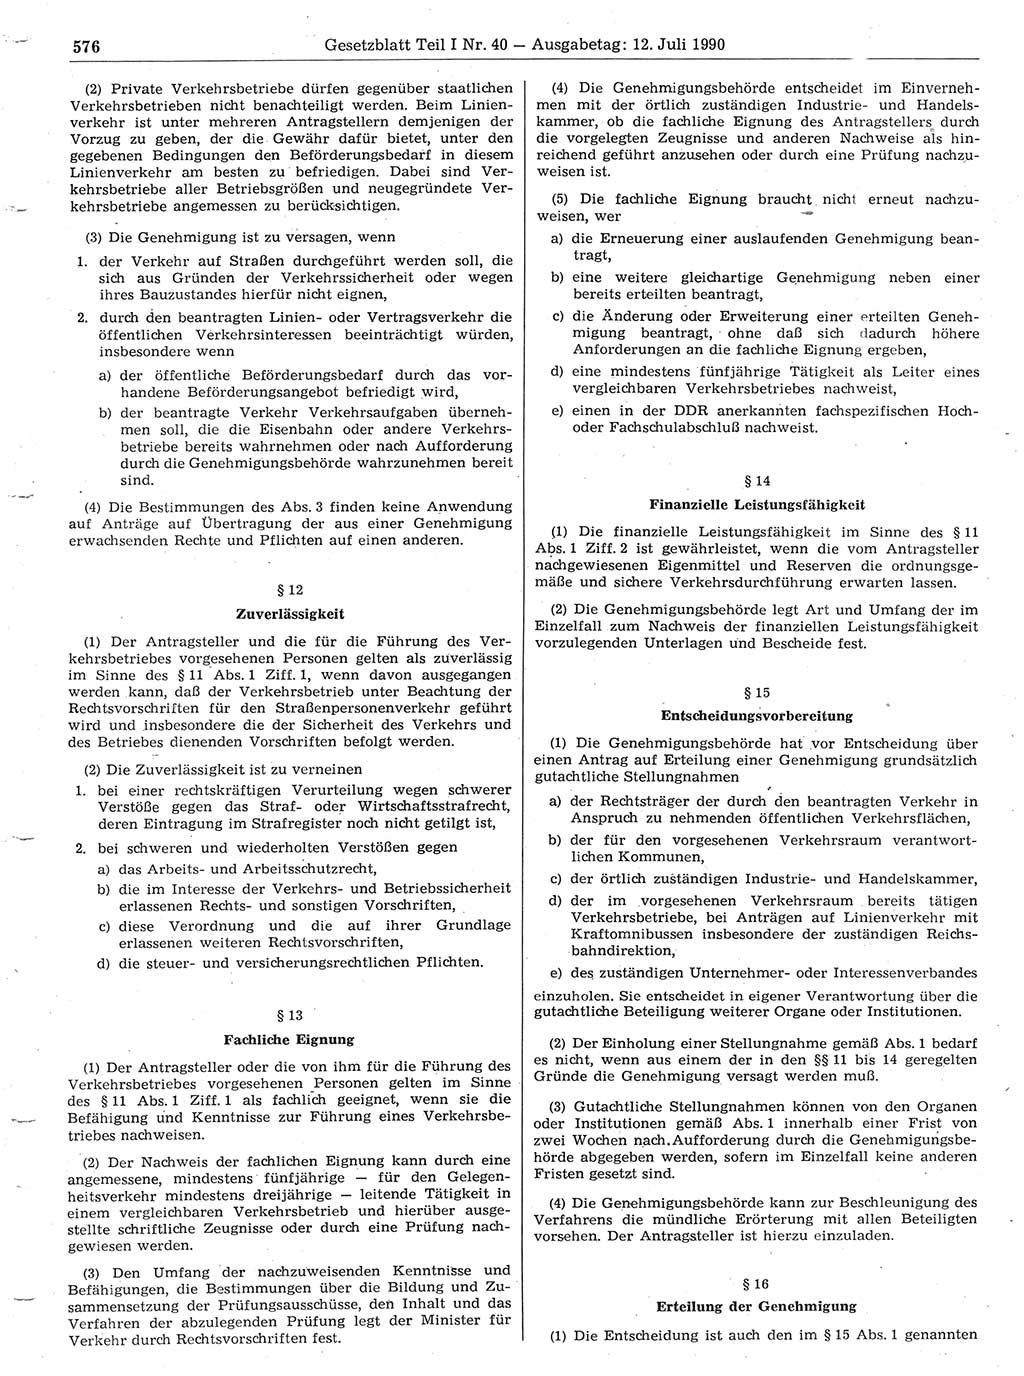 Gesetzblatt (GBl.) der Deutschen Demokratischen Republik (DDR) Teil Ⅰ 1990, Seite 576 (GBl. DDR Ⅰ 1990, S. 576)